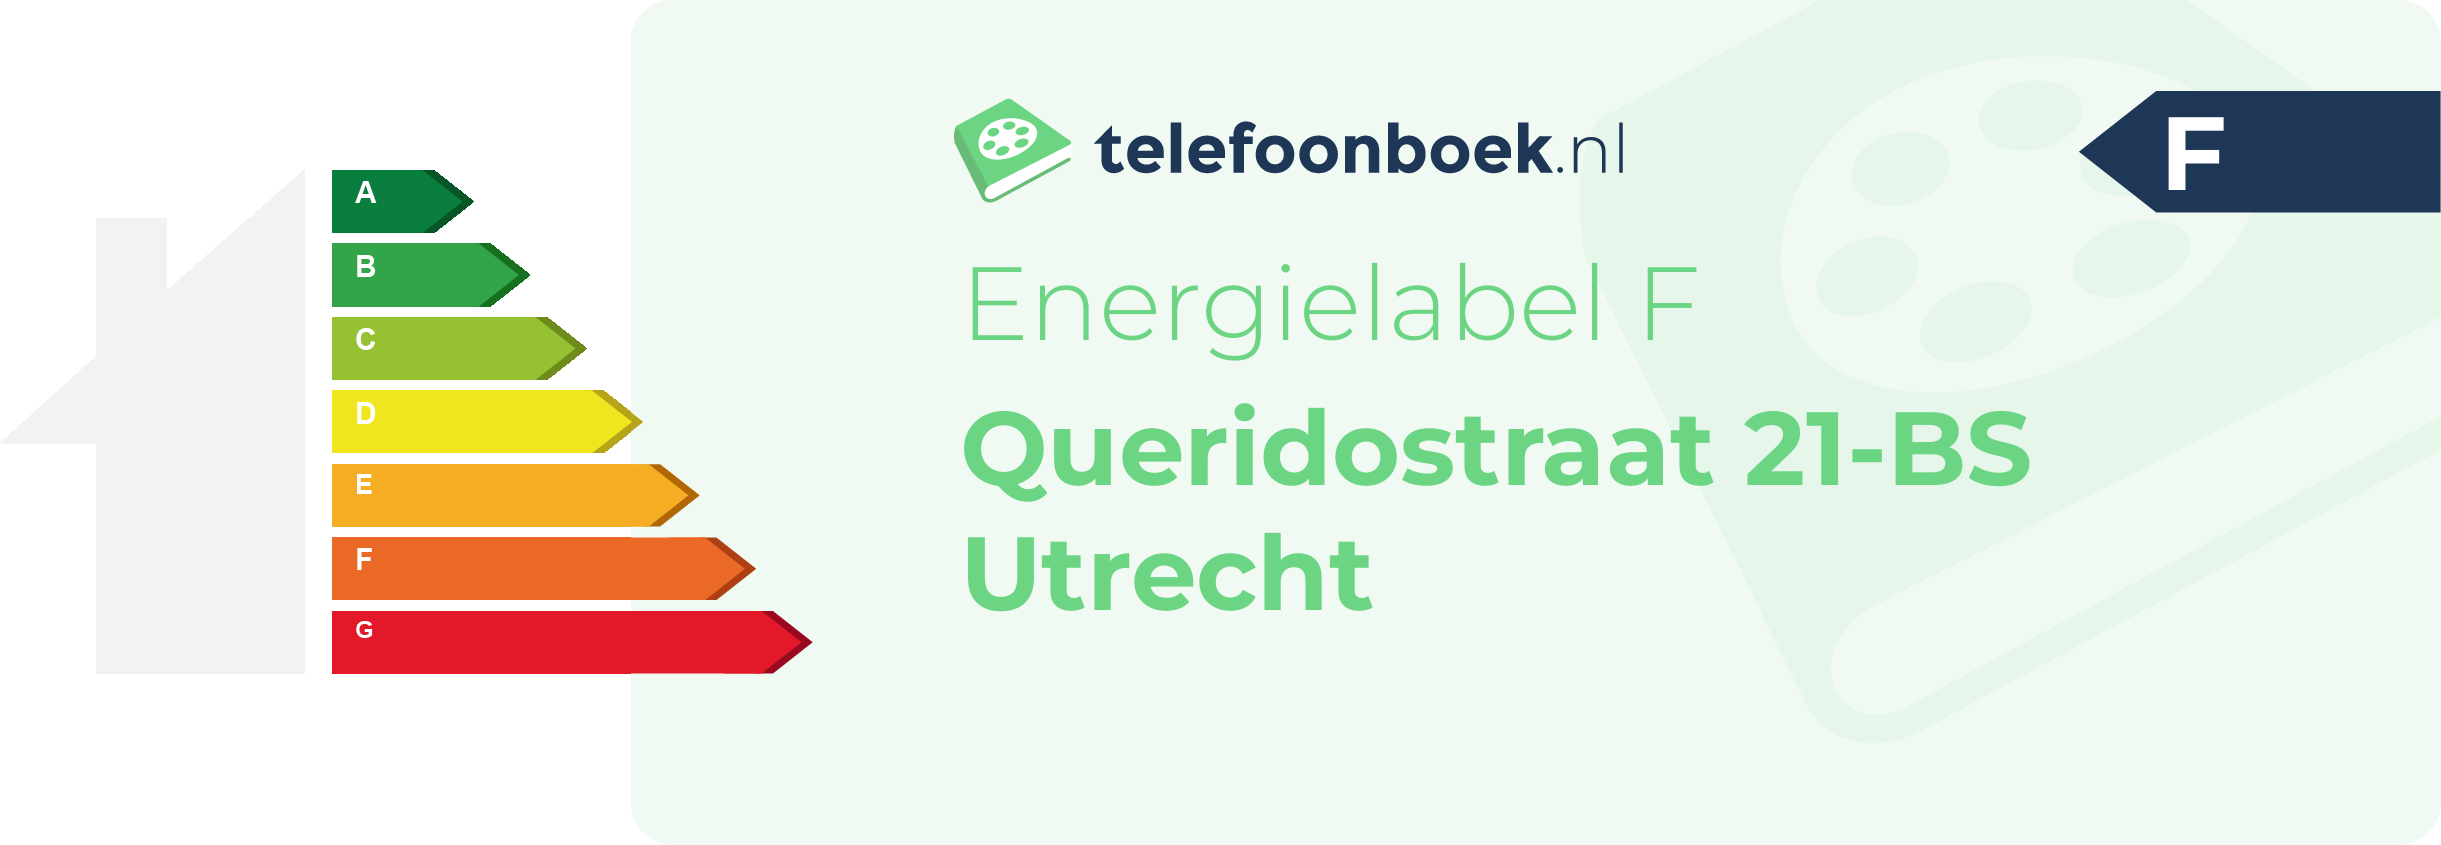 Energielabel Queridostraat 21-BS Utrecht